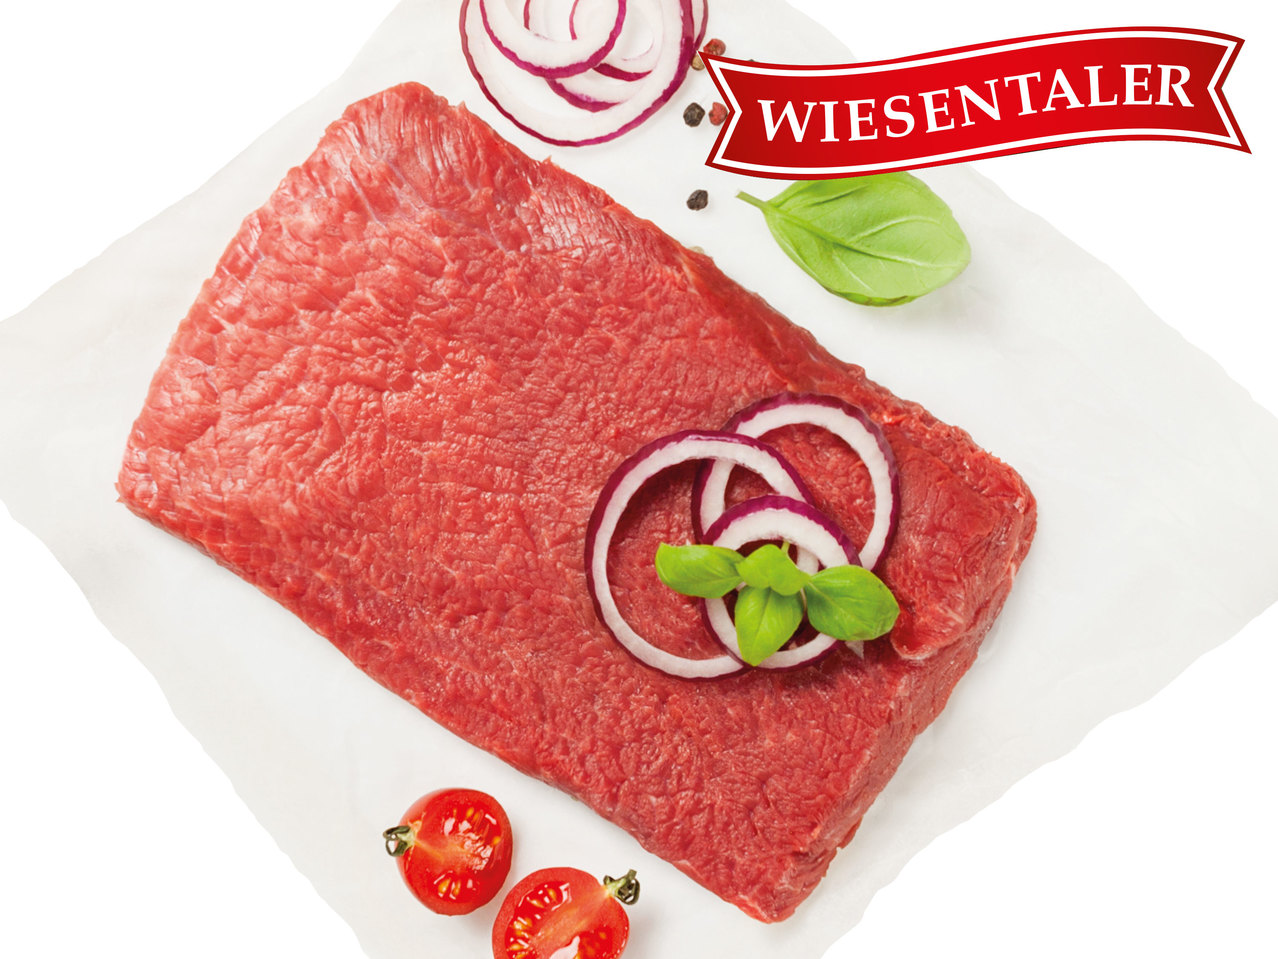 WIESENTALER Frisches österreichisches Flat Iron Steak